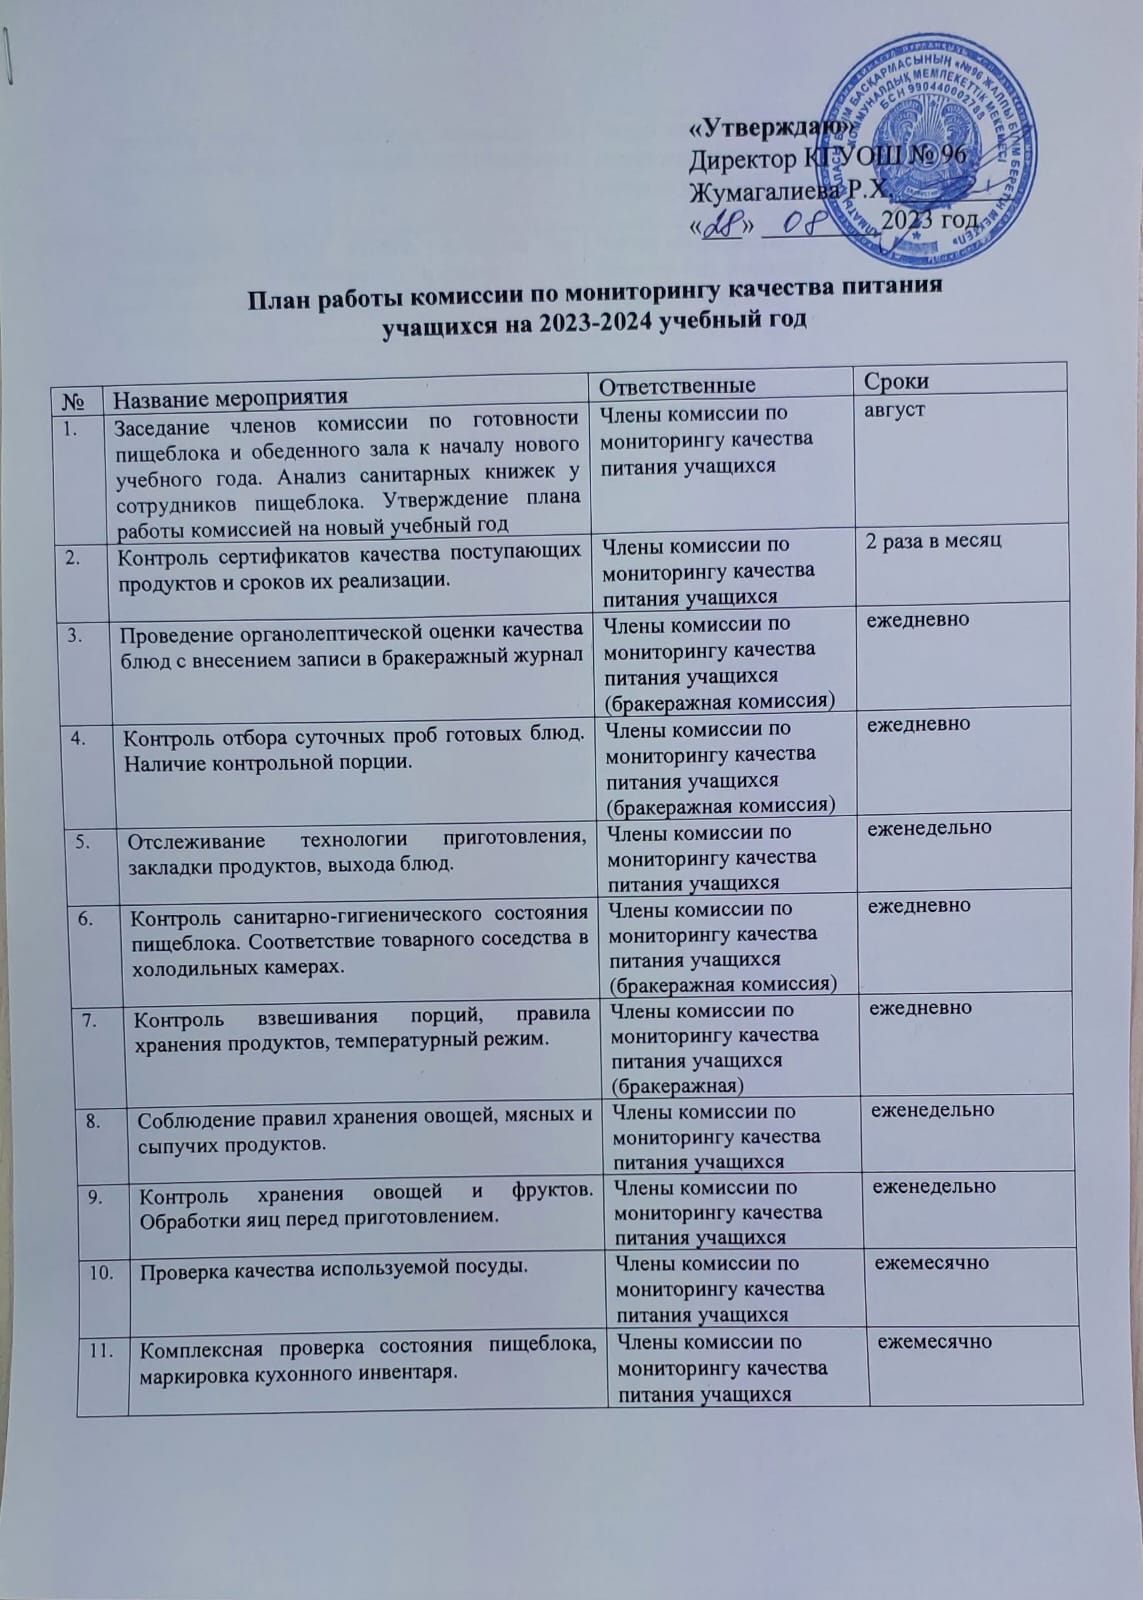 Планы работы мониторинговой комиссии КГУ ОШ №96 на 2023-2024 уч. год